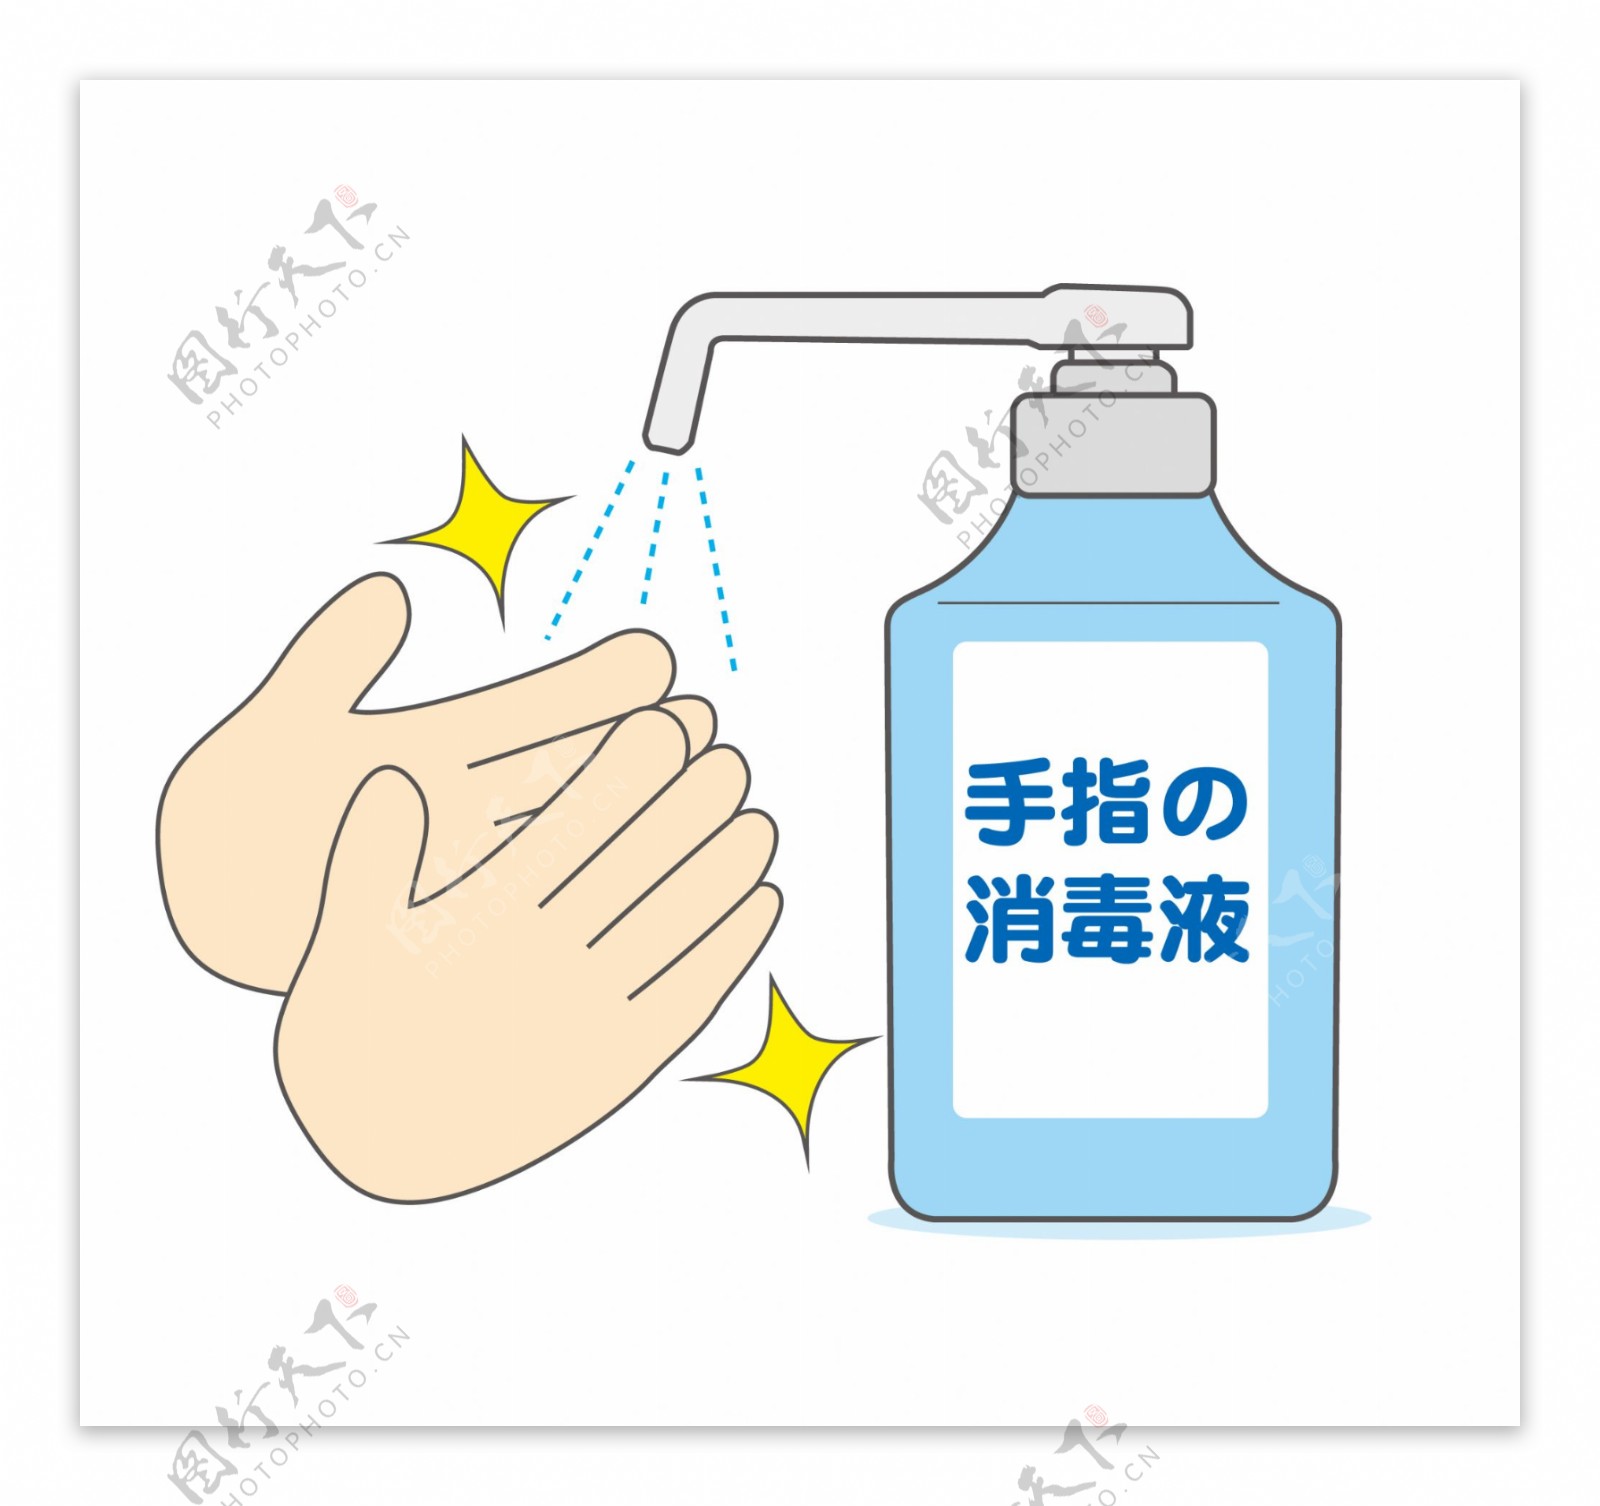 洗手液消毒液洗手图片